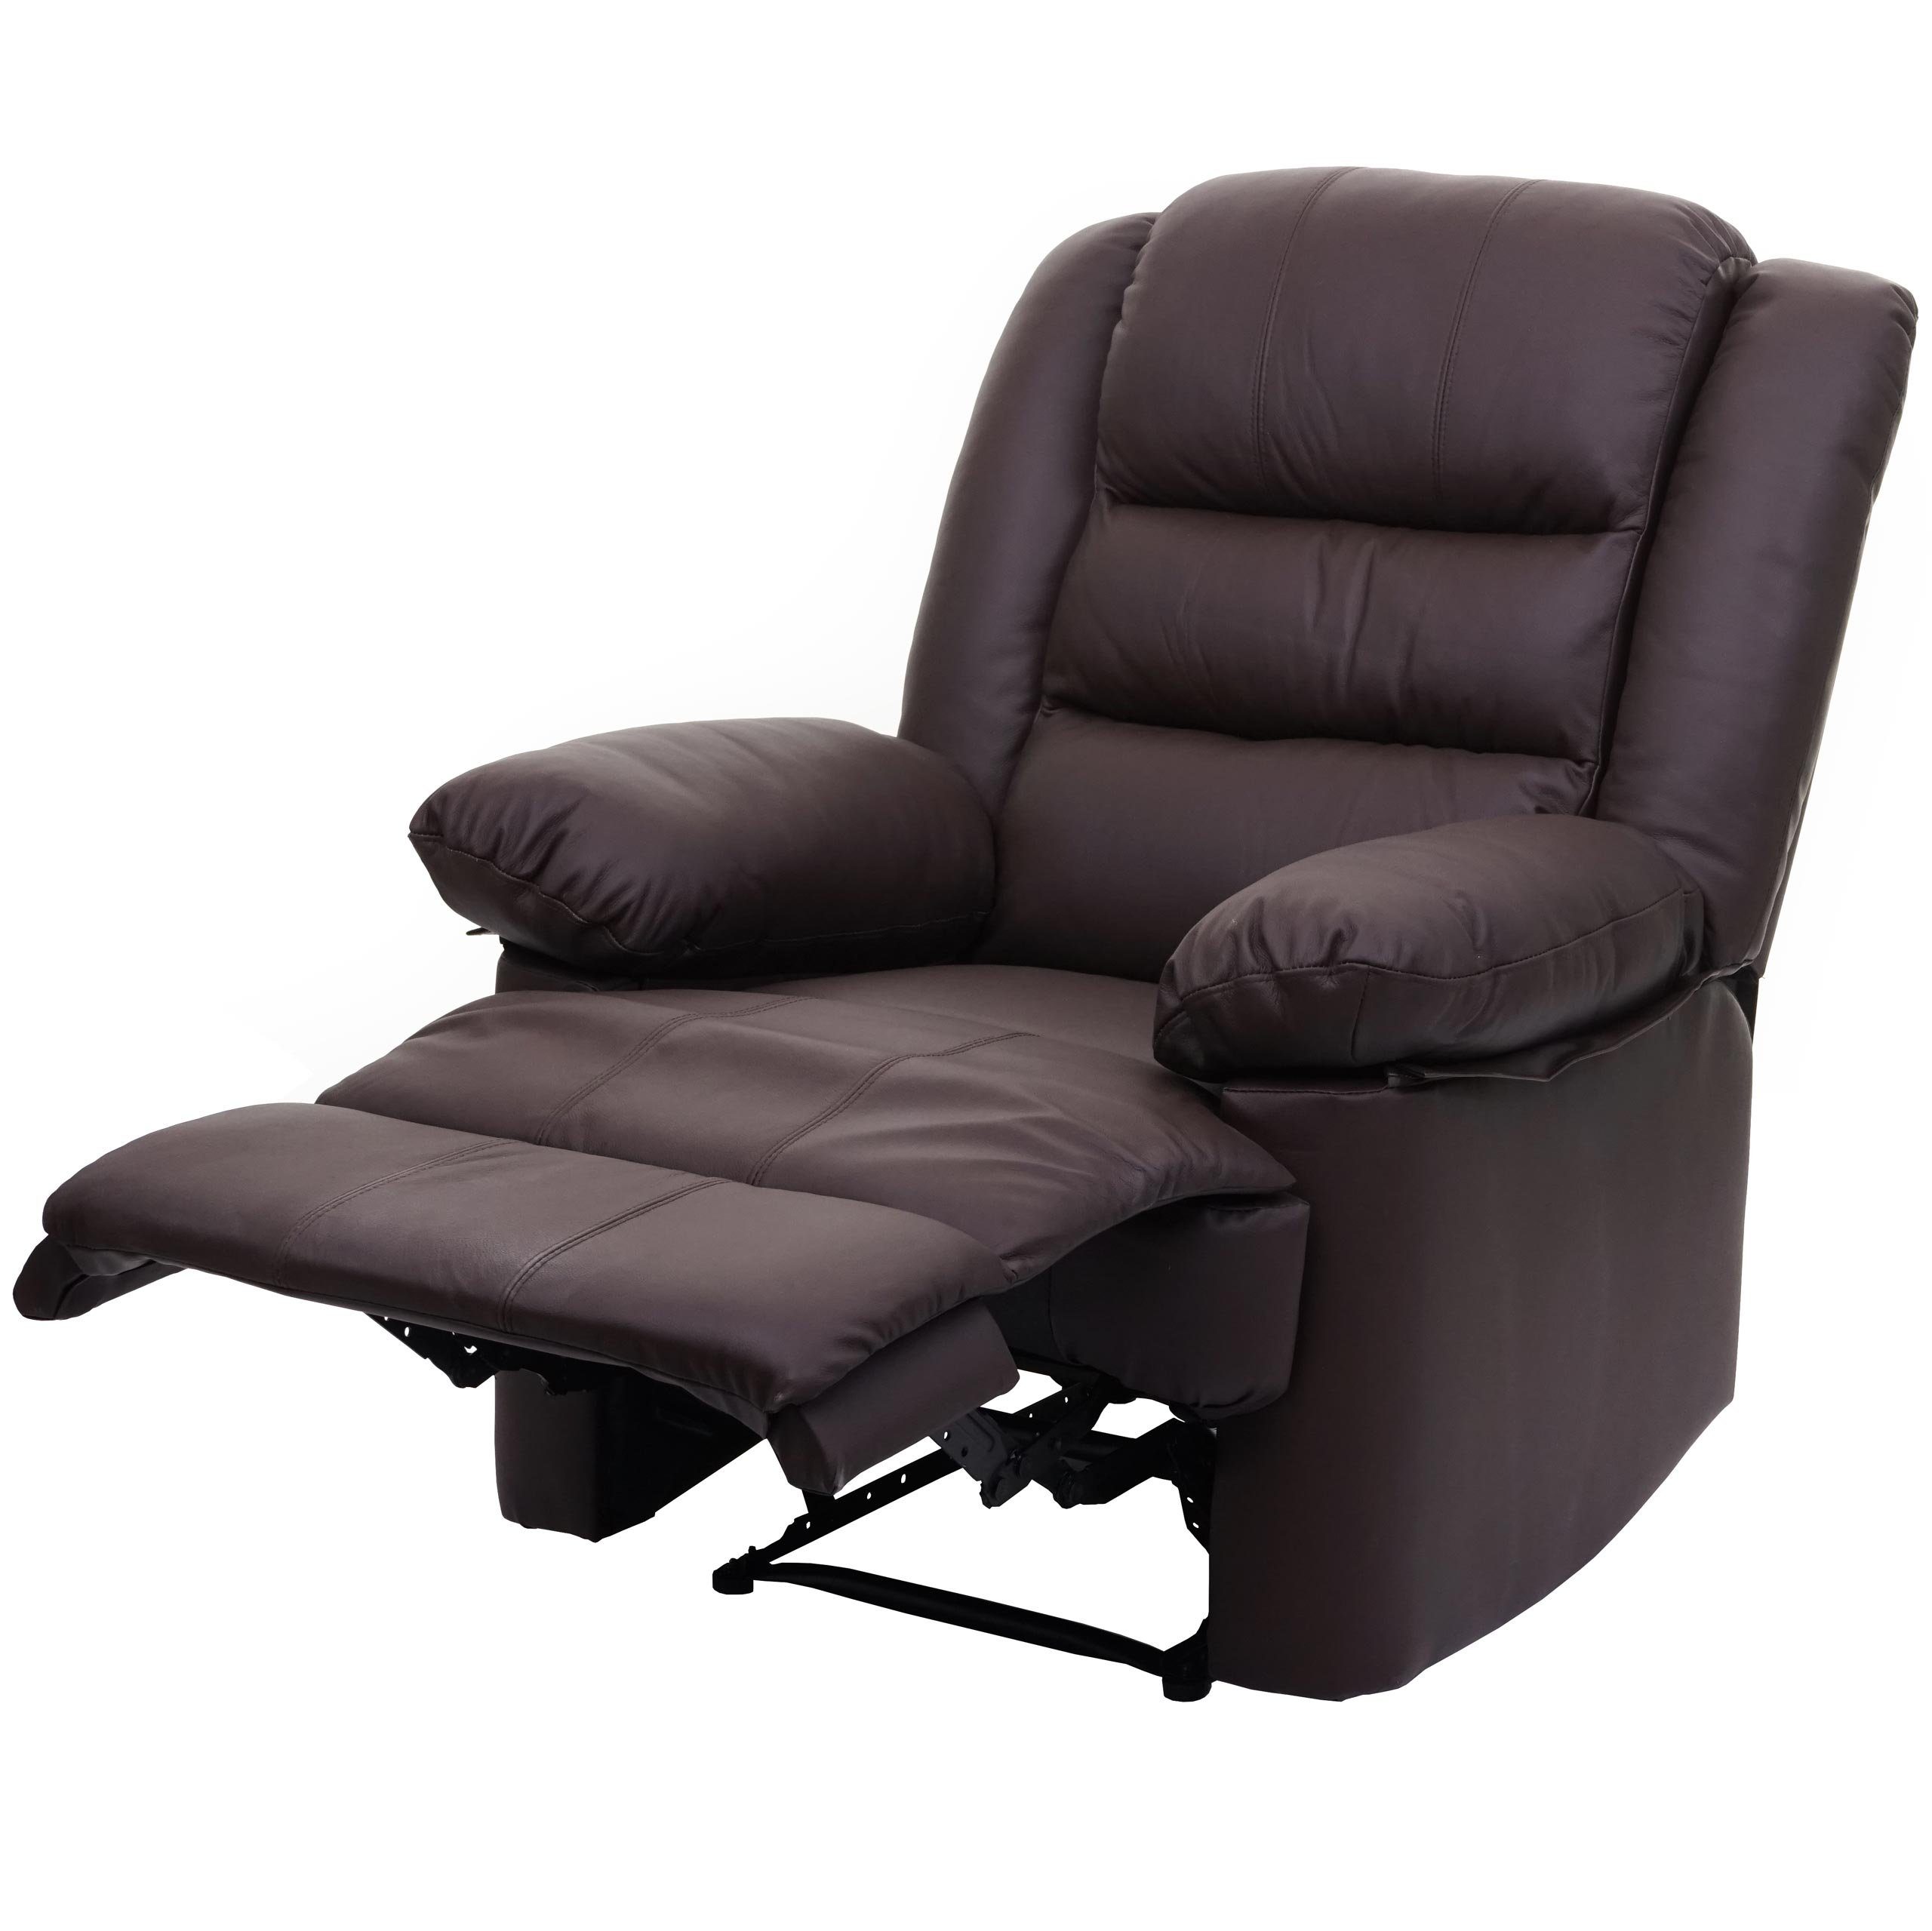 MCW TV-Sessel MCW-G15, Liegefläche: 165 cm, Verstellbare Rückenfläche, Fußstütze verstellbar, Liegefunktion